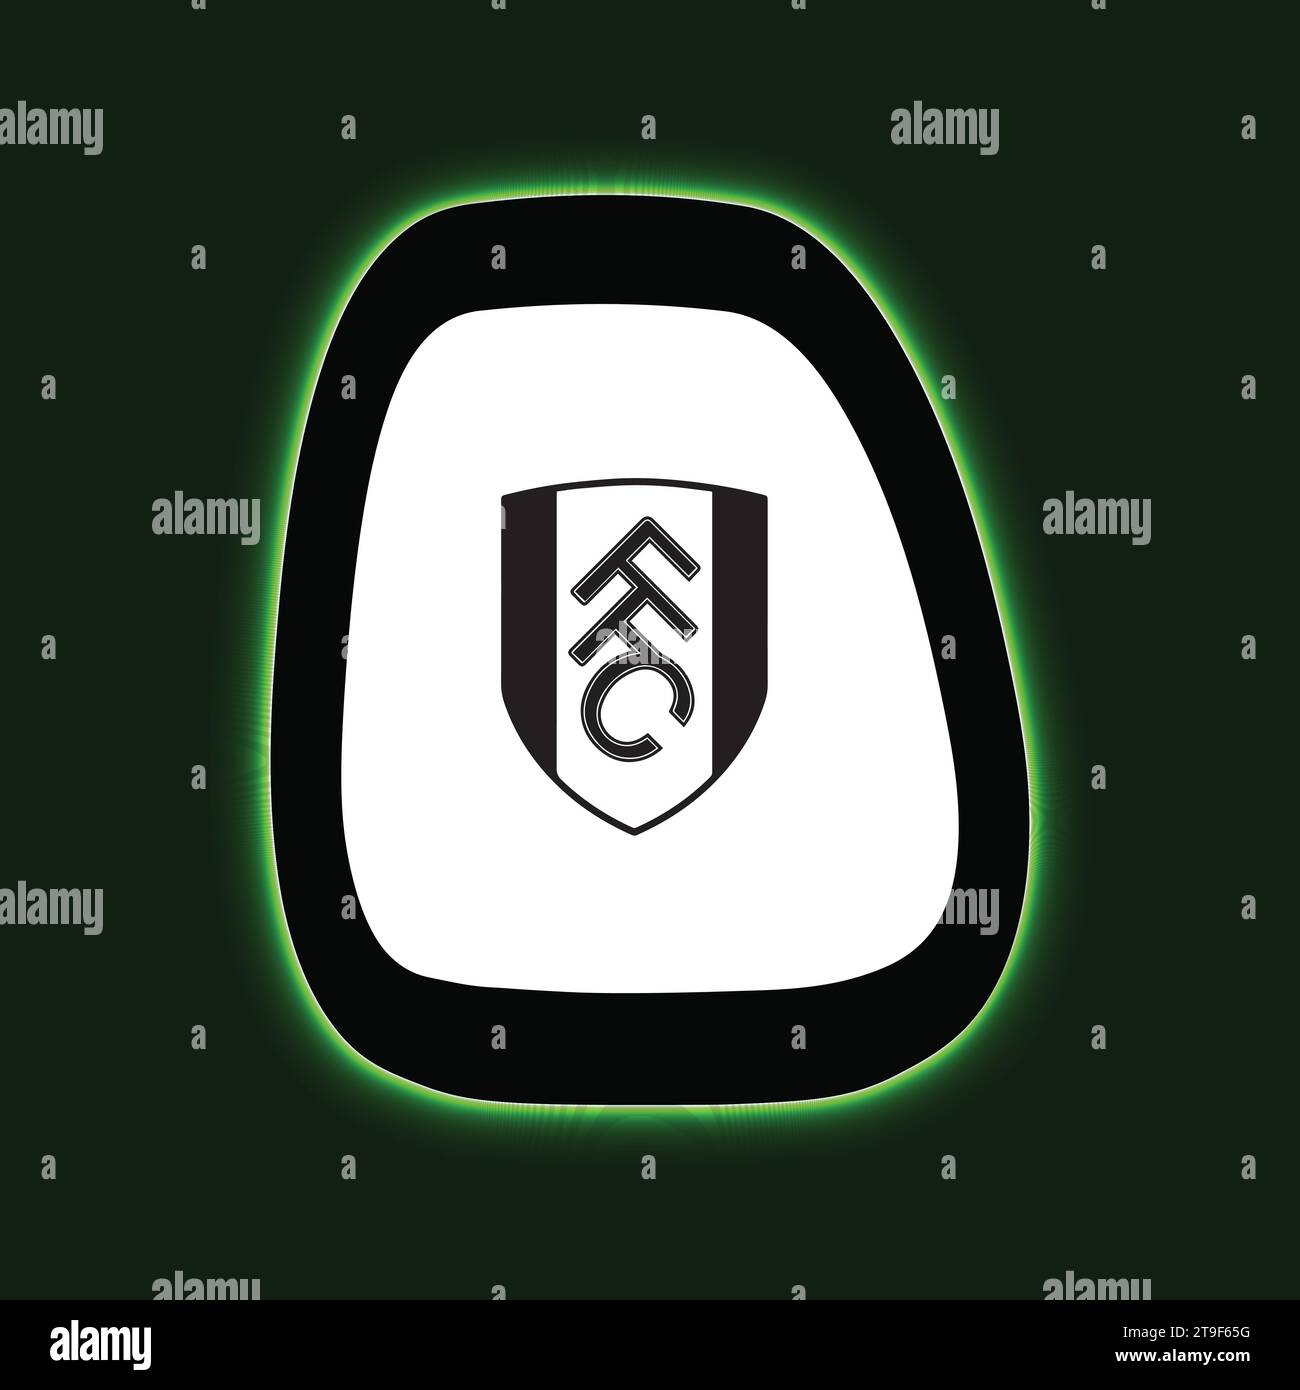 Fulham FC Logo Neon Light Board Vista sfondo verde, squadra di calcio professionistica inglese illustrazione vettoriale immagine astratta modificabile Illustrazione Vettoriale